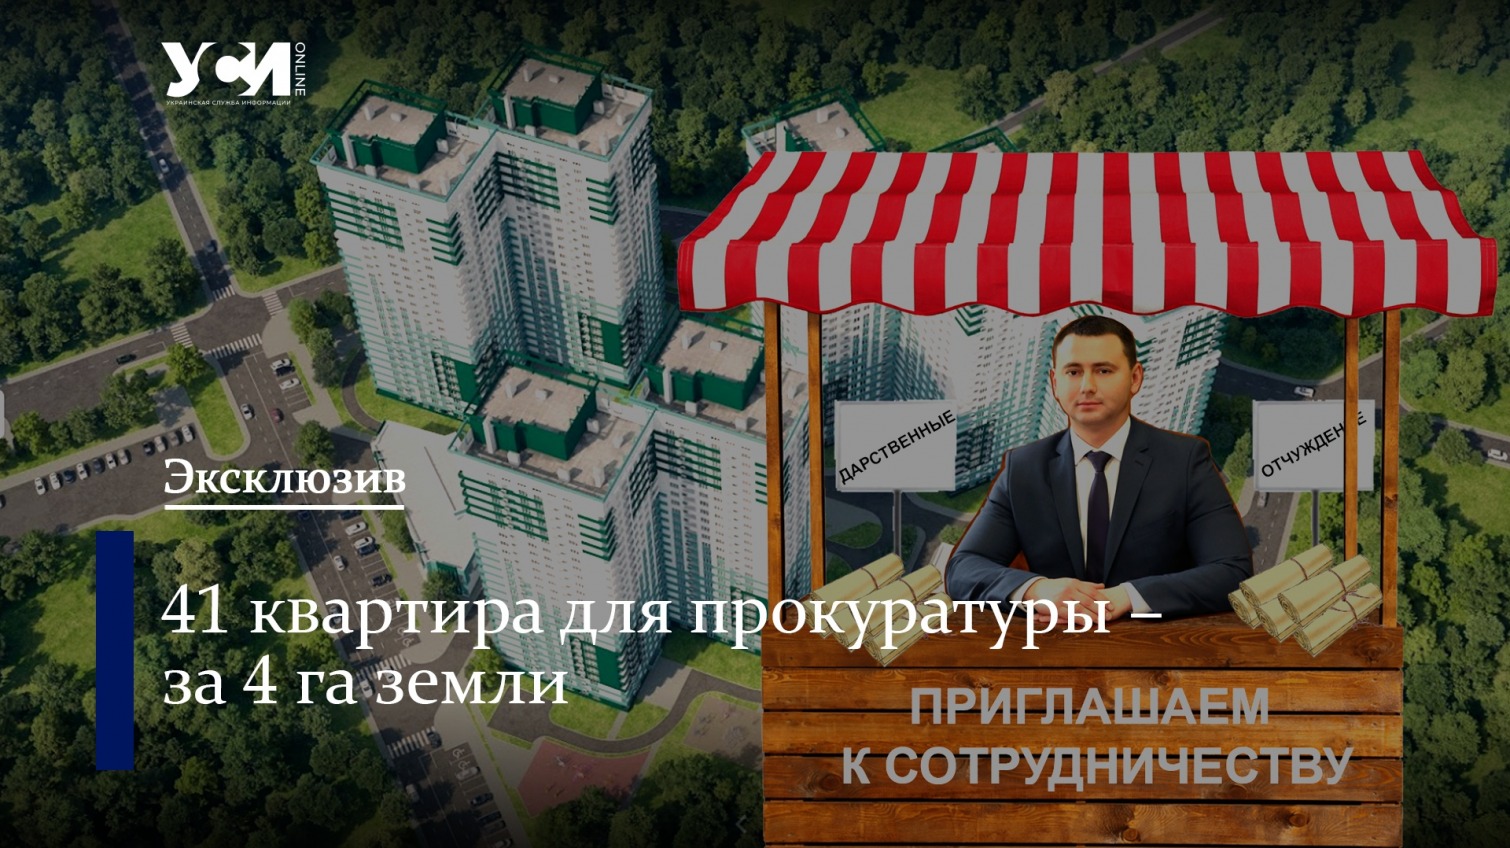 «Сделка века» от Жученко: за 4 га земли прокуратура получила 41 квартиру «фото»